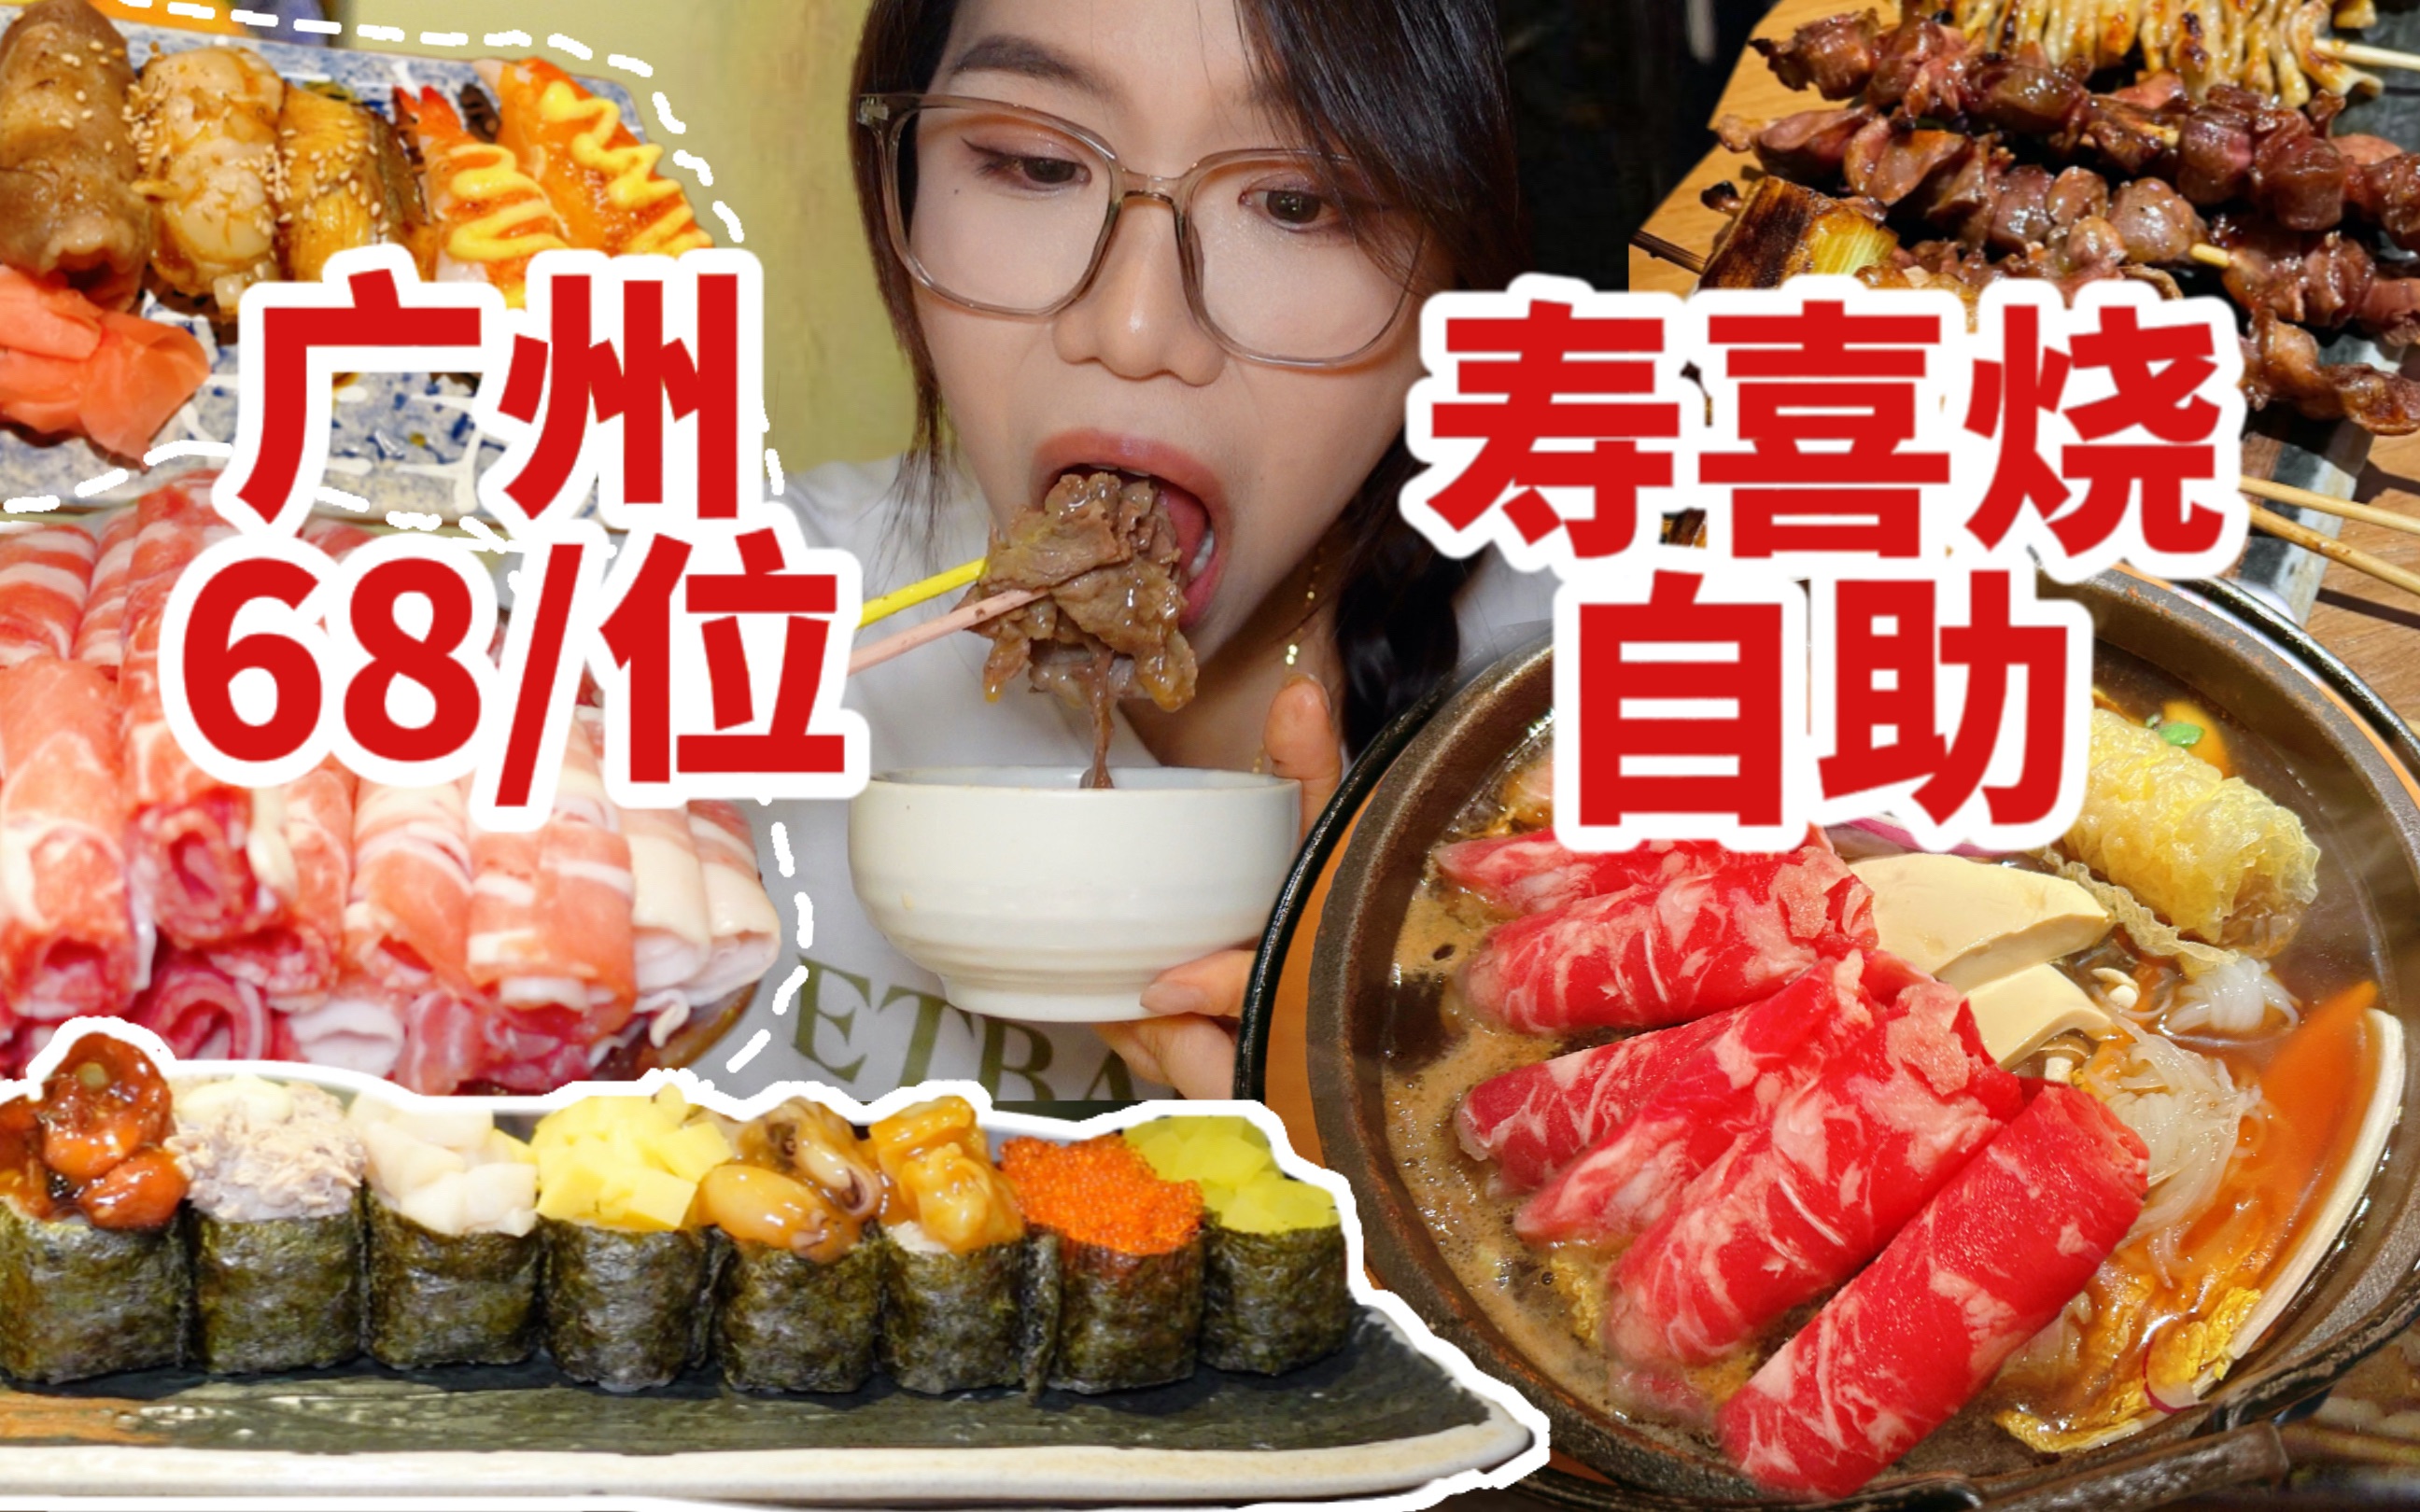 广州68/位的寿喜烧自助！牛肉寿司烧鸟不限量随意吃！妹子点了12盘肉吃爽了！